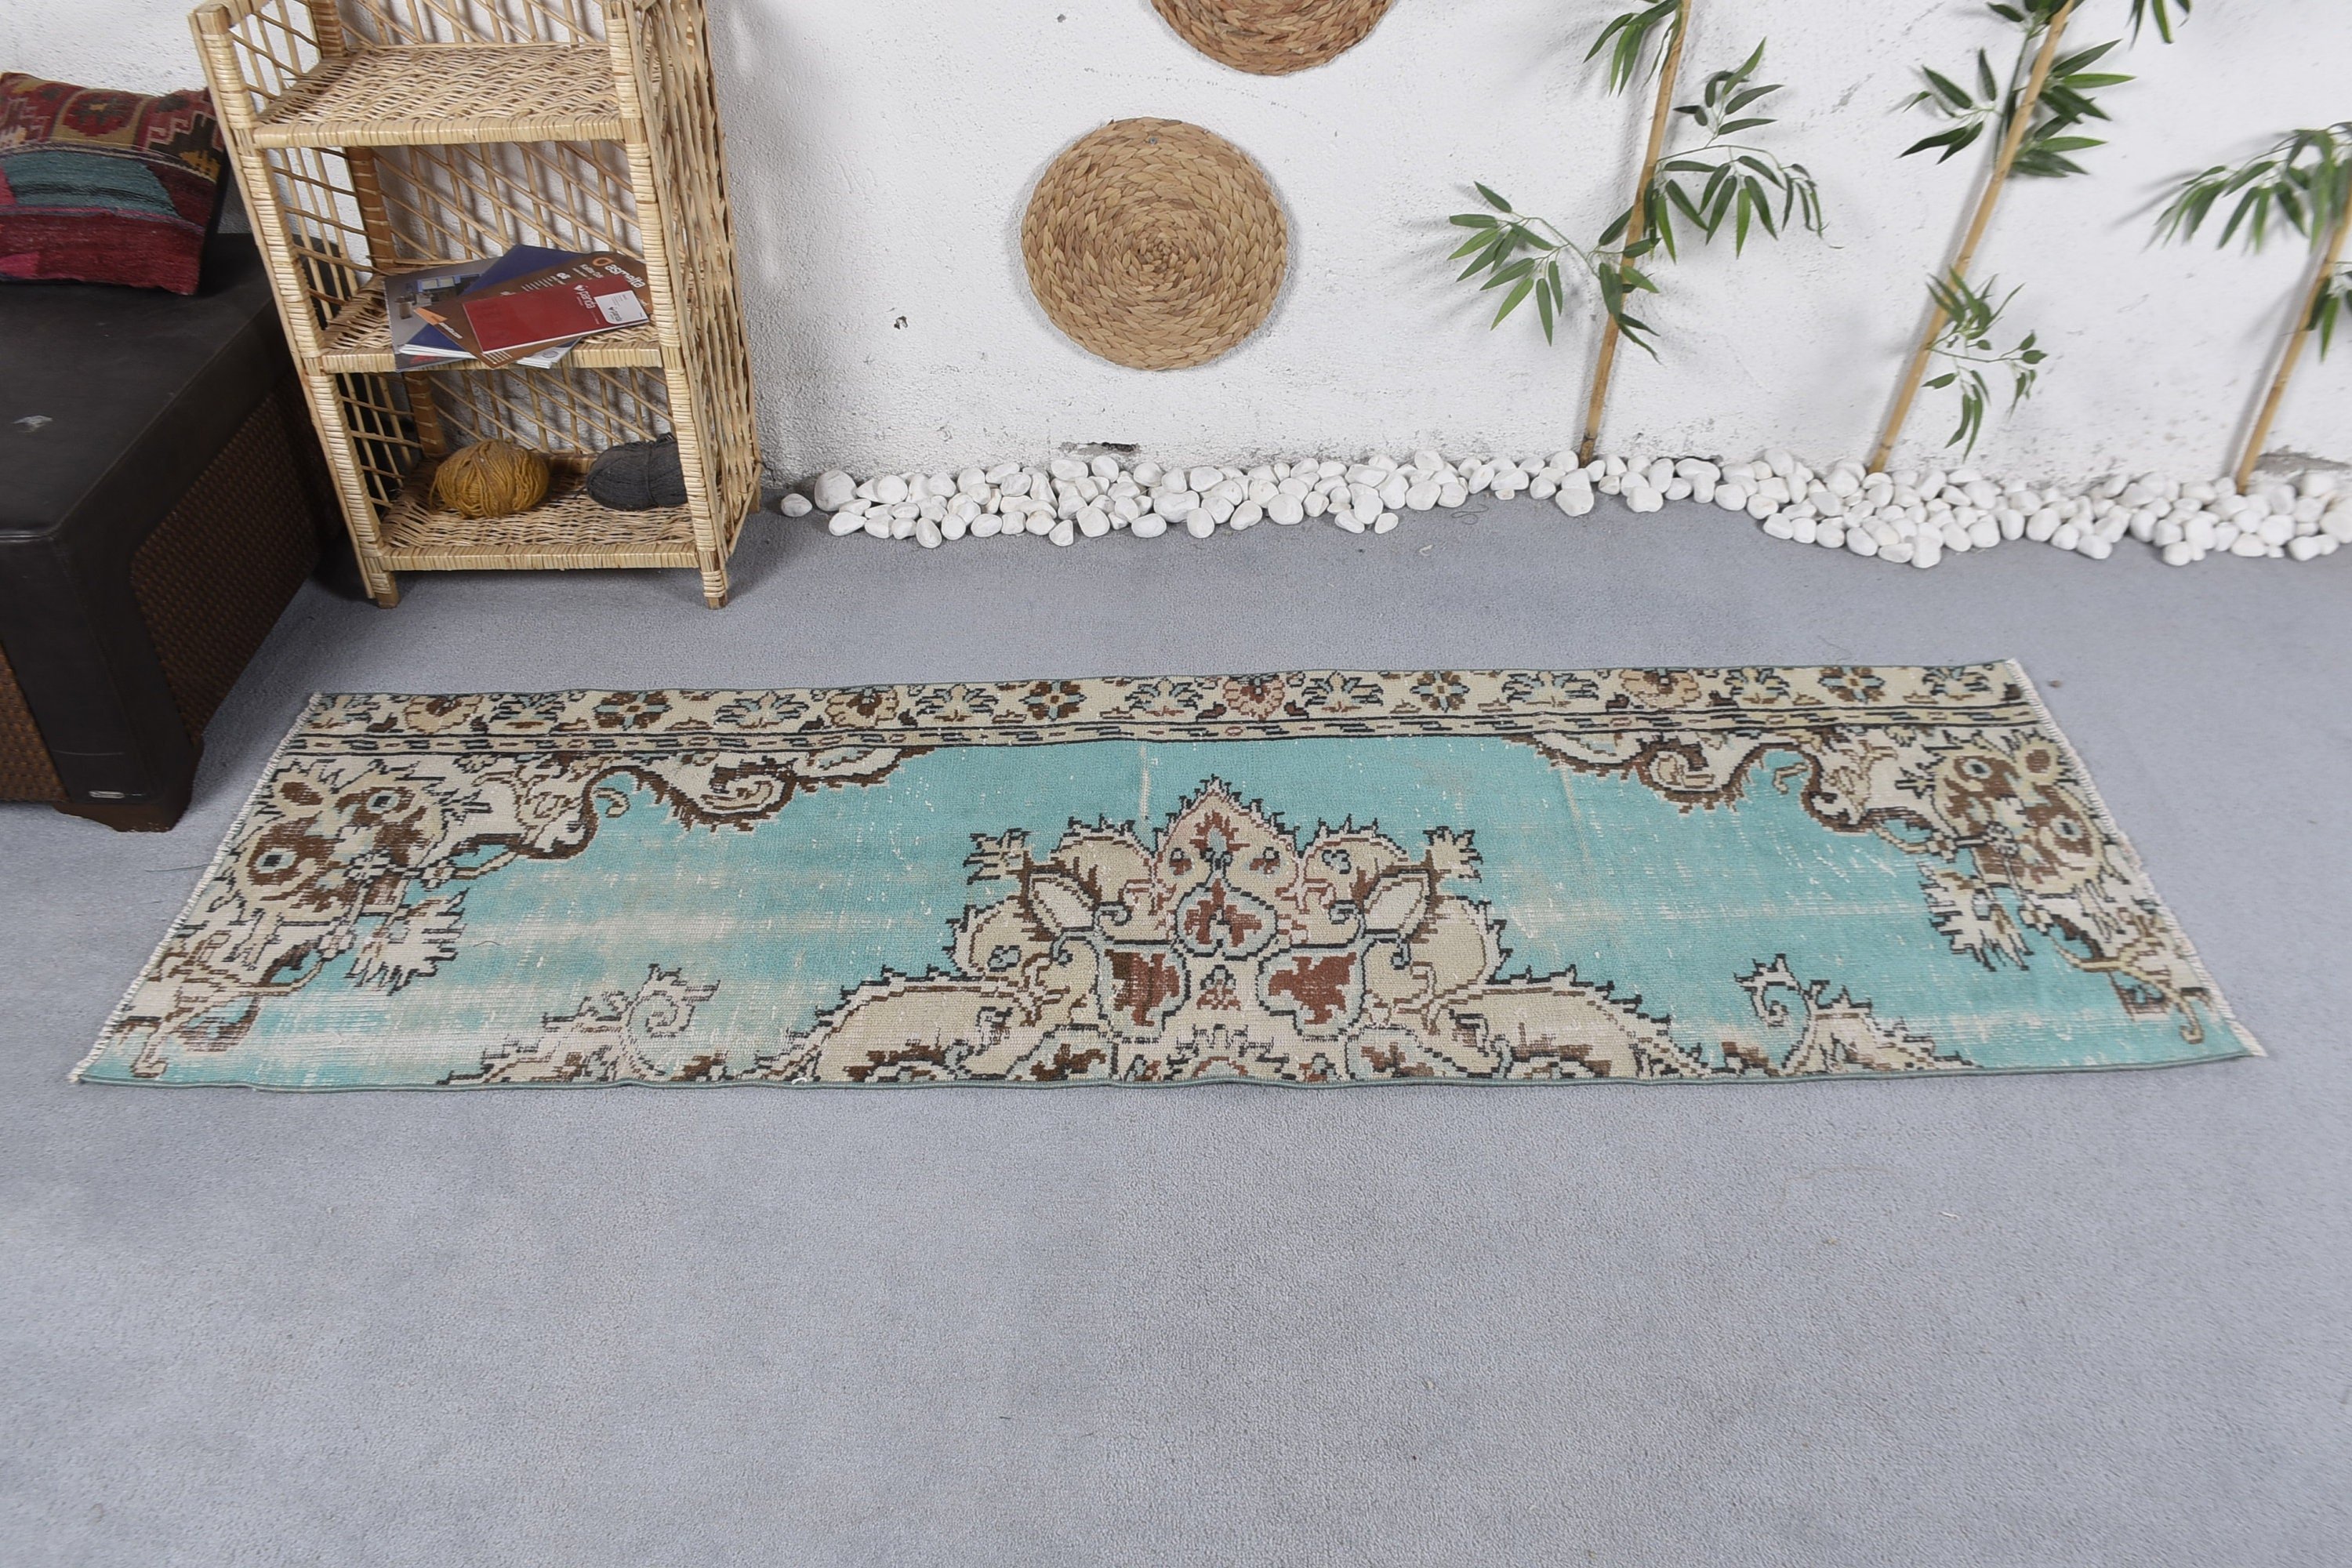 Turkish Rug, Floor Rug, Rugs for Hallway, 2.4x7.2 ft Runner Rug, Vintage Rug, Corridor Rugs, Office Rug, Blue Anatolian Rugs, Oriental Rugs